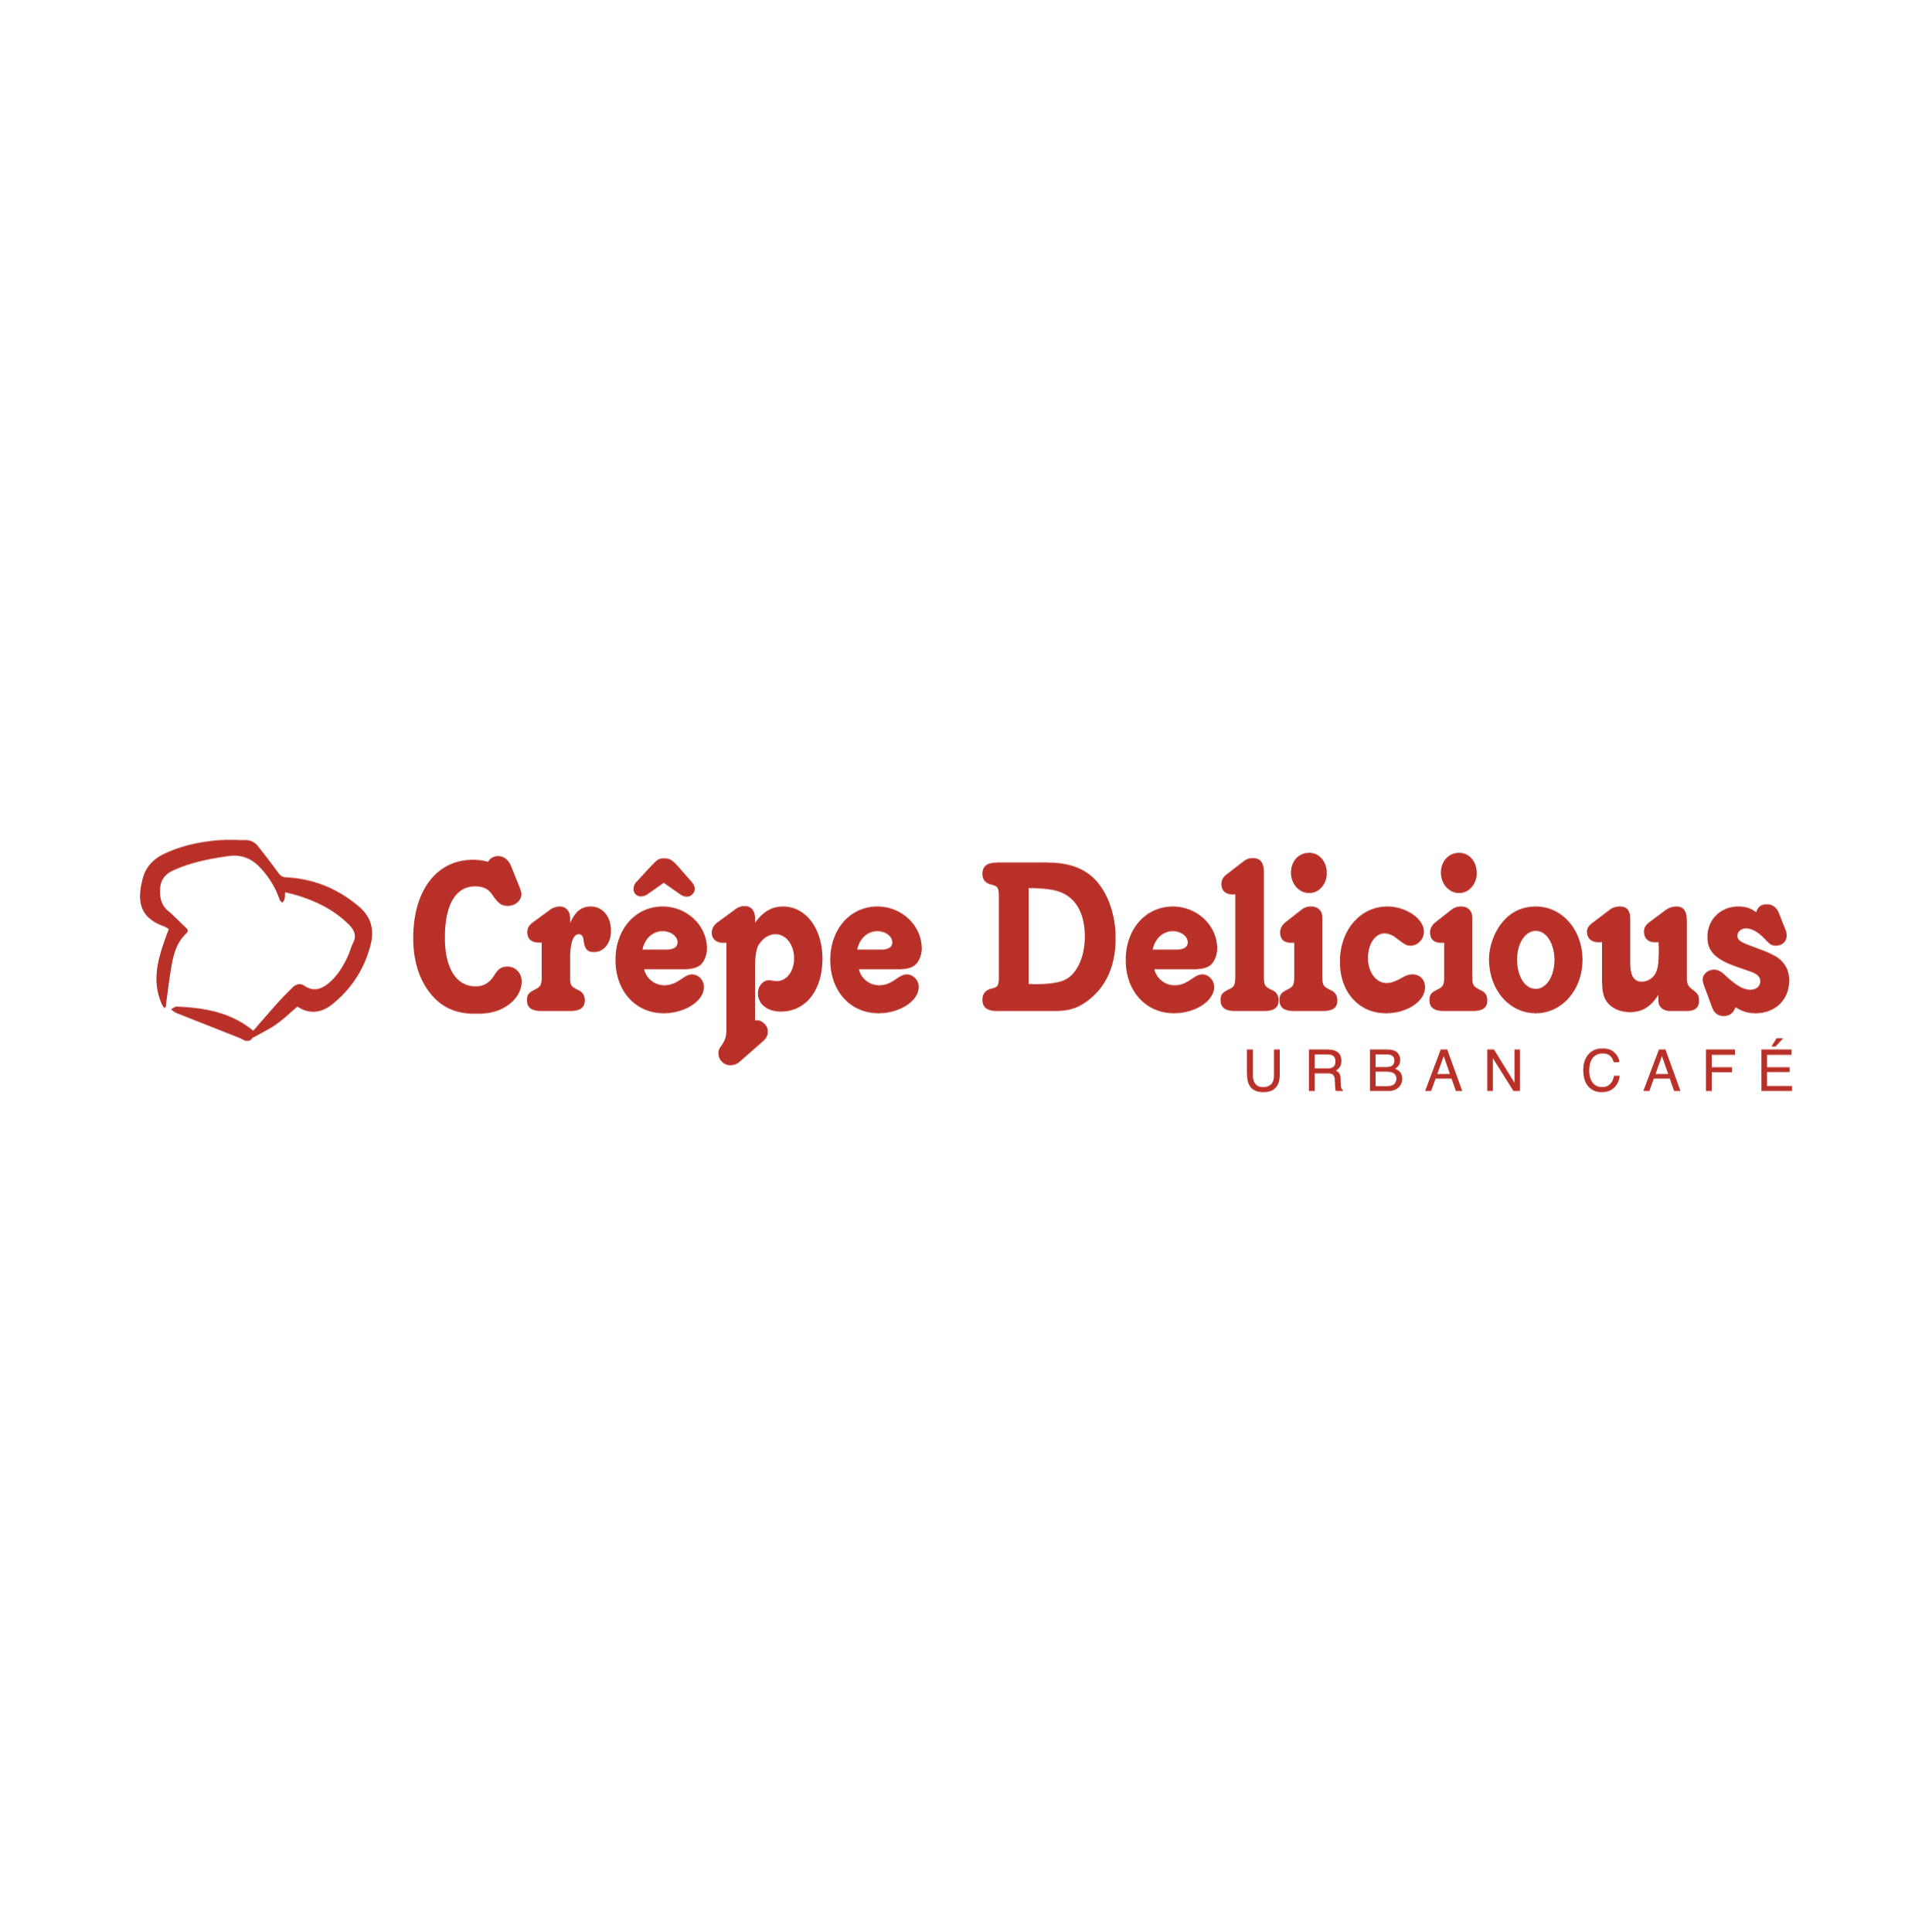 Crepe Delicious